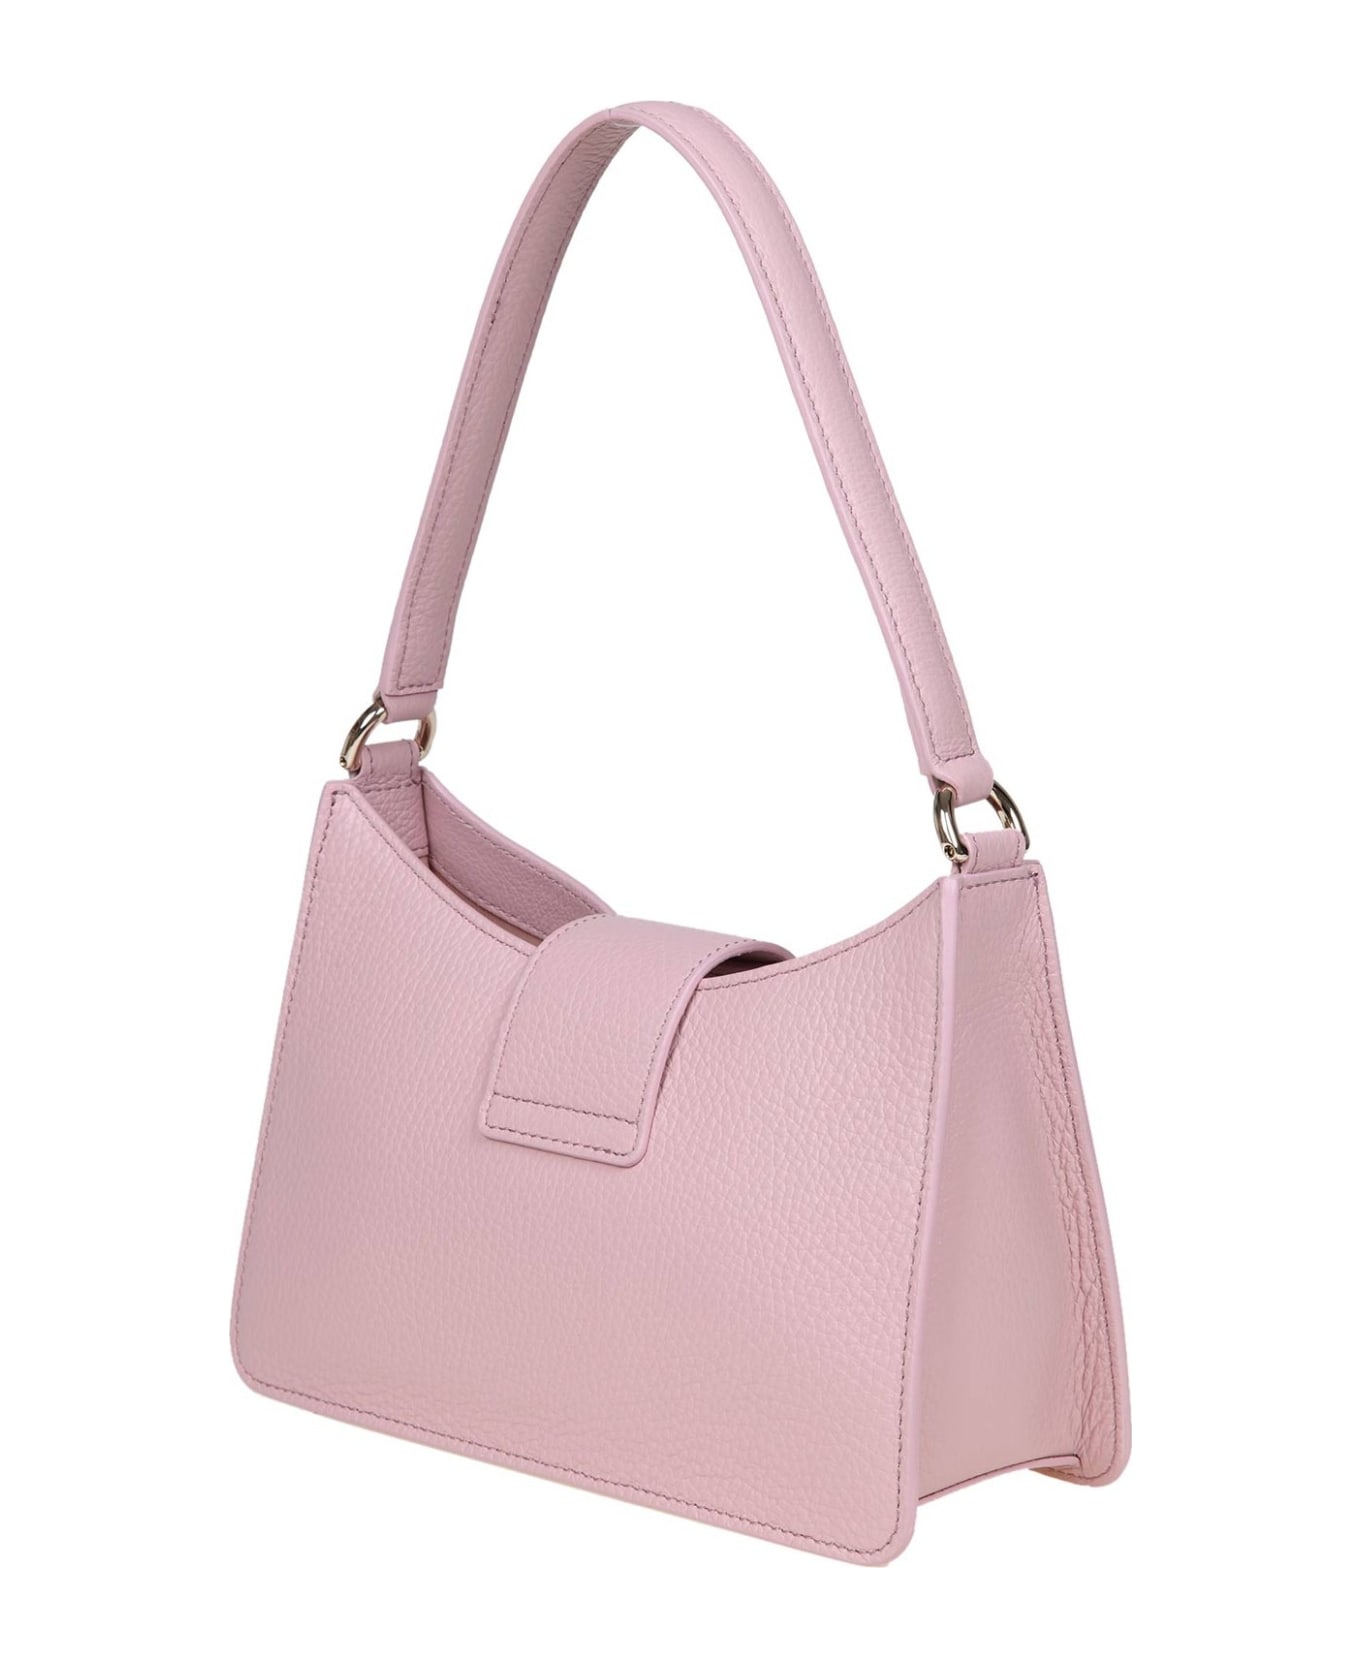 Furla 1927 S Shoulder Bag In Pink Soft Leather - Alba